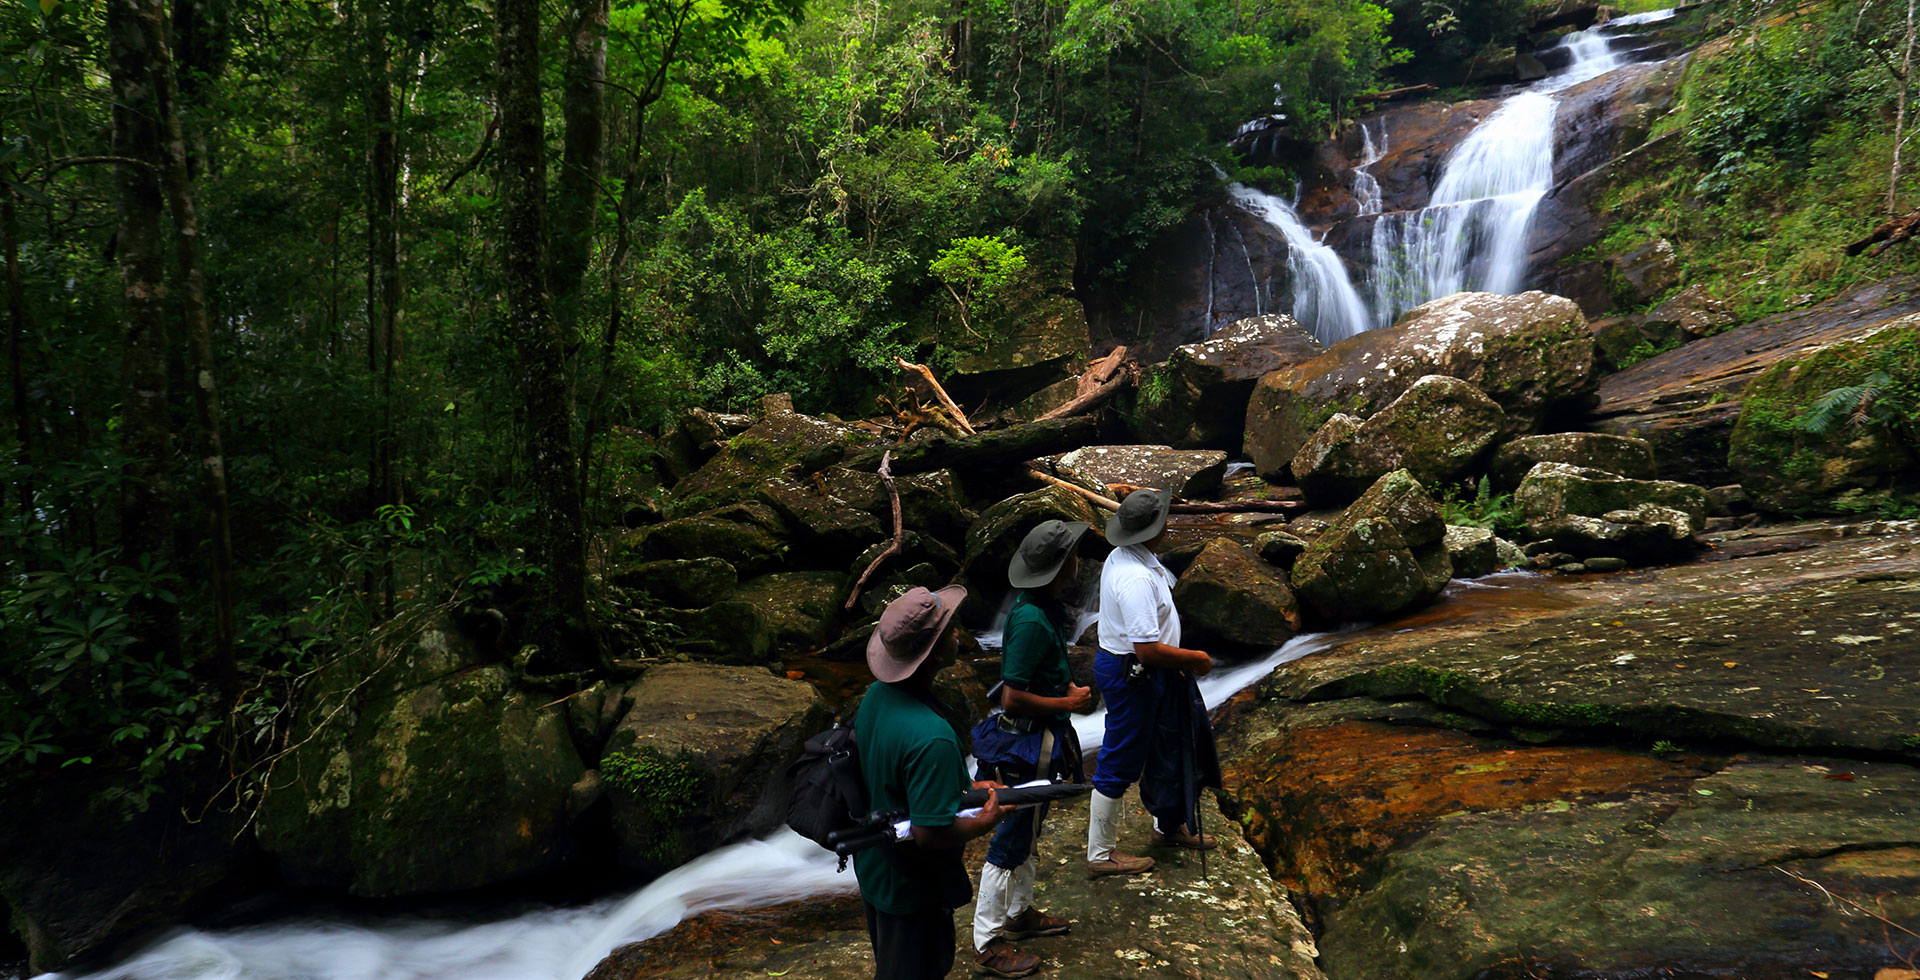 Toeristen lopen langs rotsen die naar een kleine waterval leiden